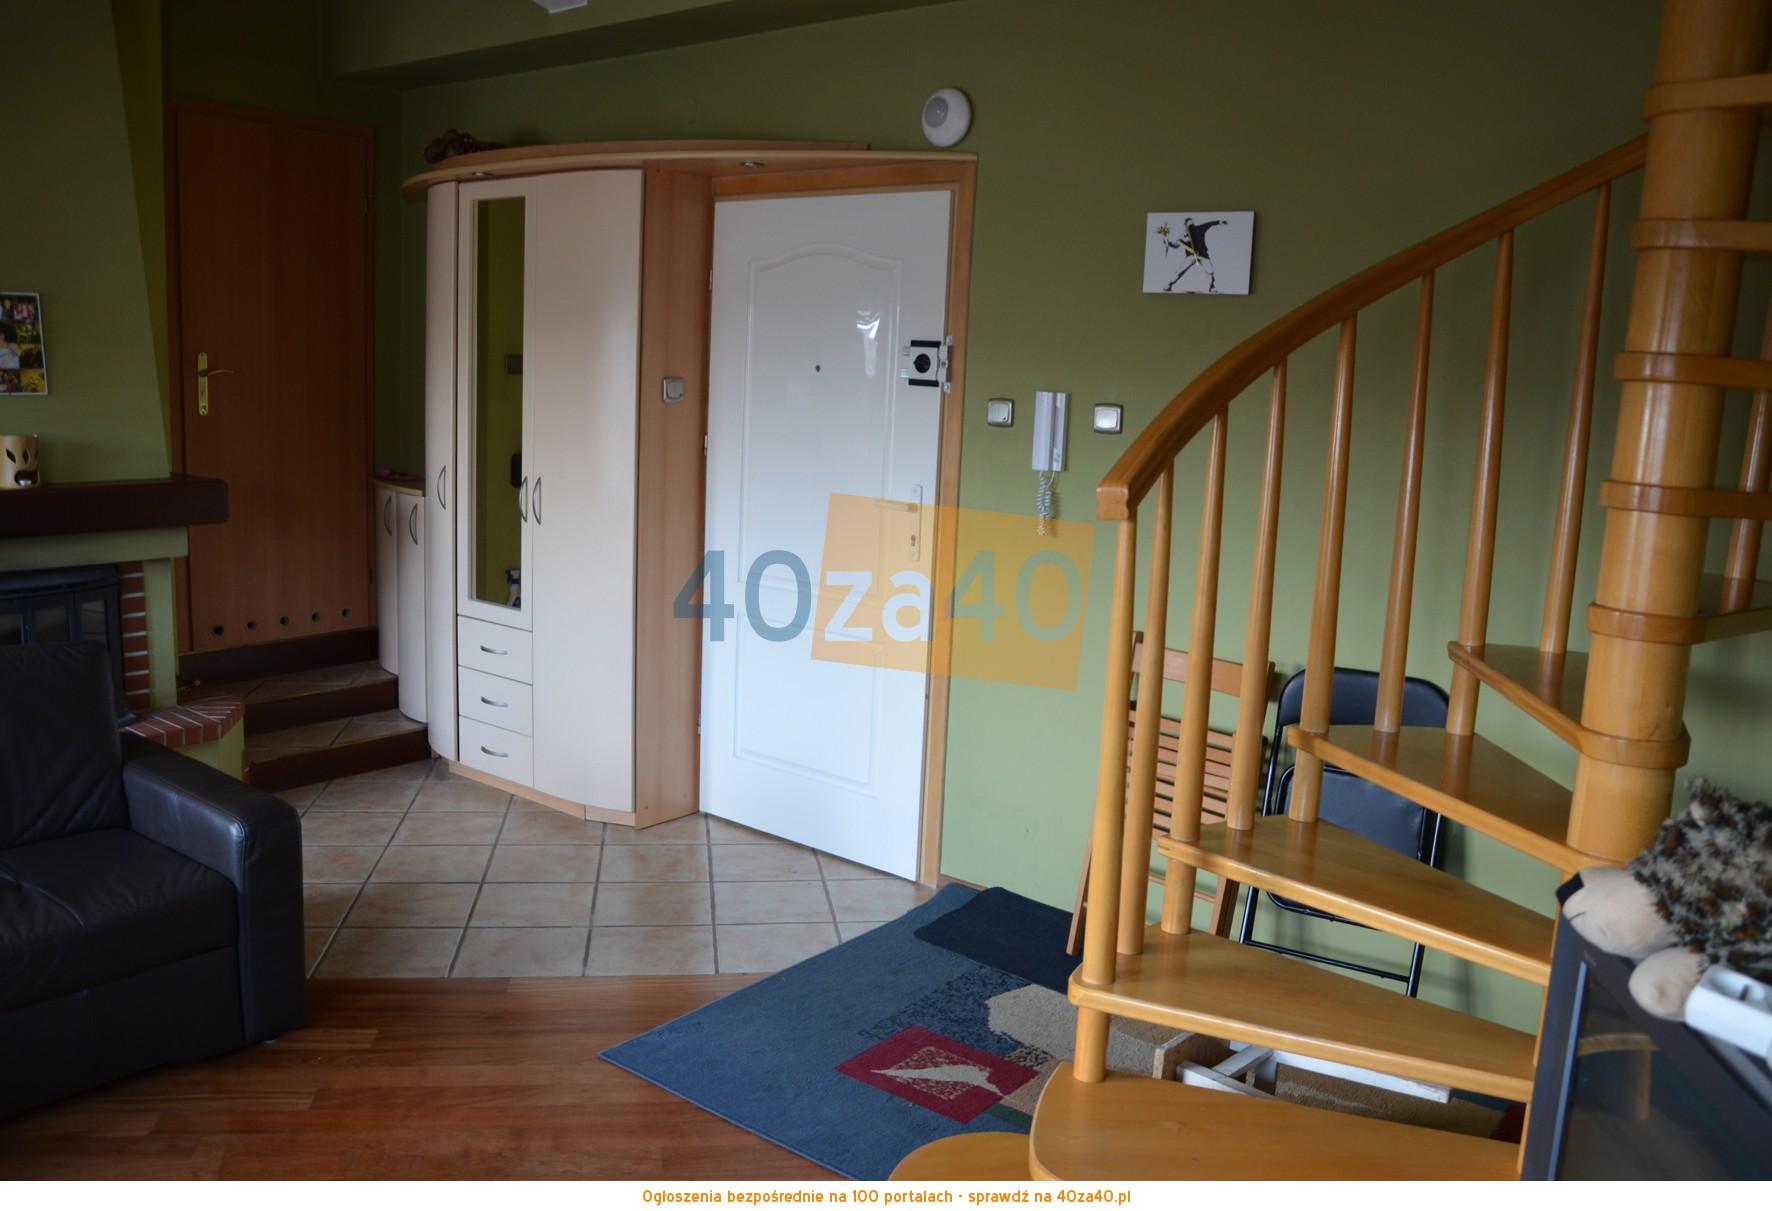 Mieszkanie do wynajęcia, pokoje: 4, cena: 2 100,00 PLN, Gdynia, kontakt: 514757565